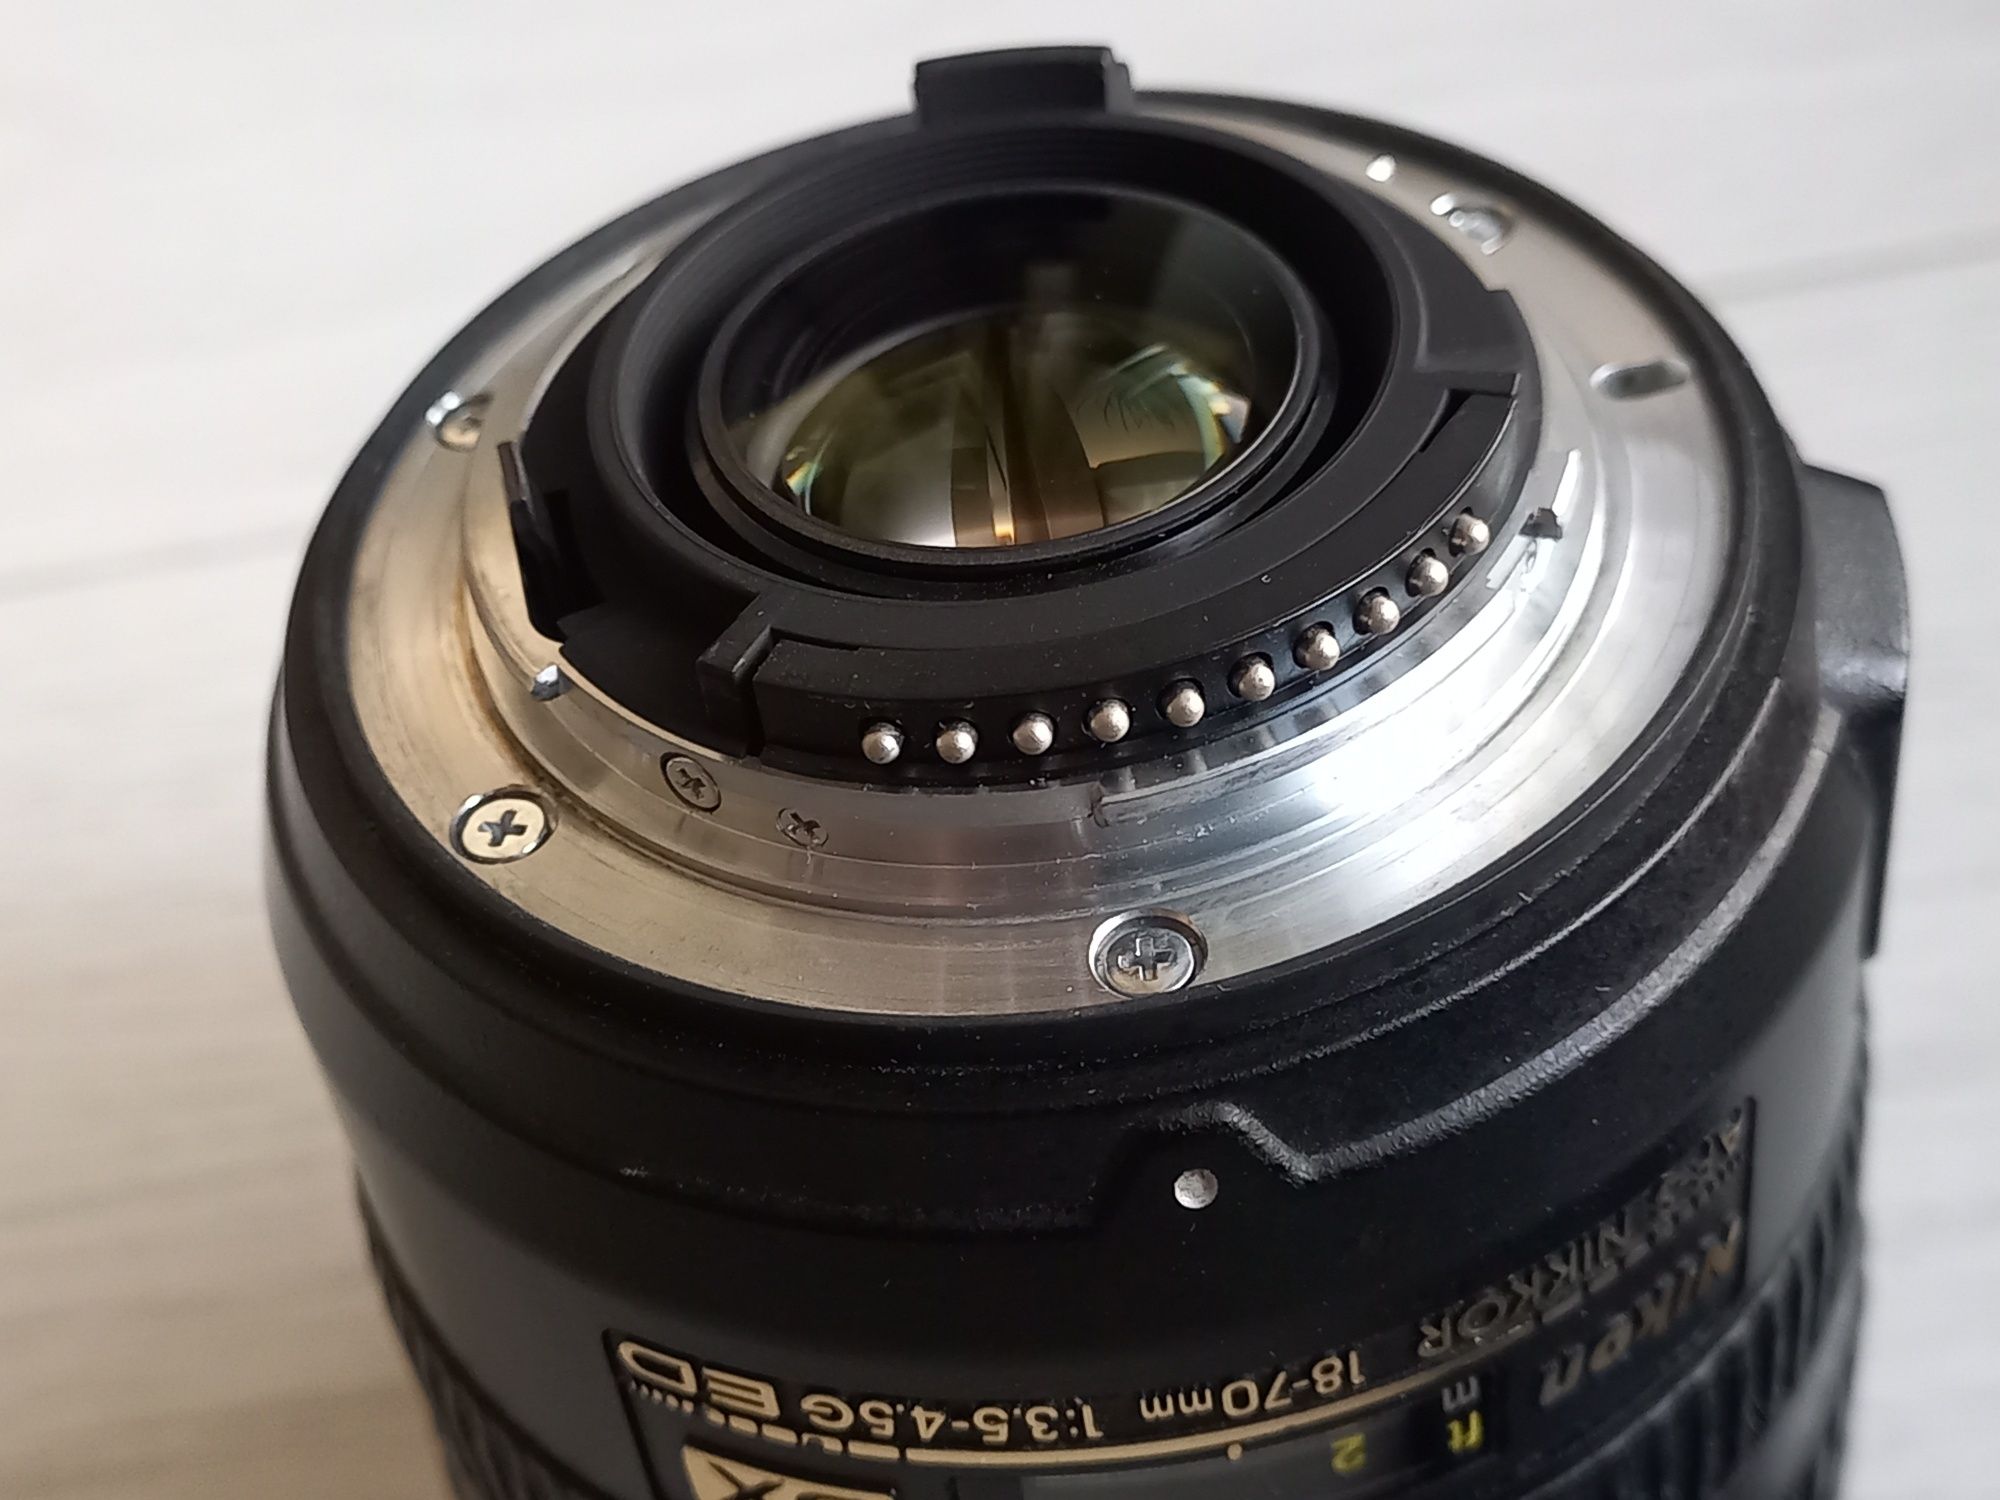 Nikon 18-70mm f/3.5-4.5 G IF ED AF- S DX